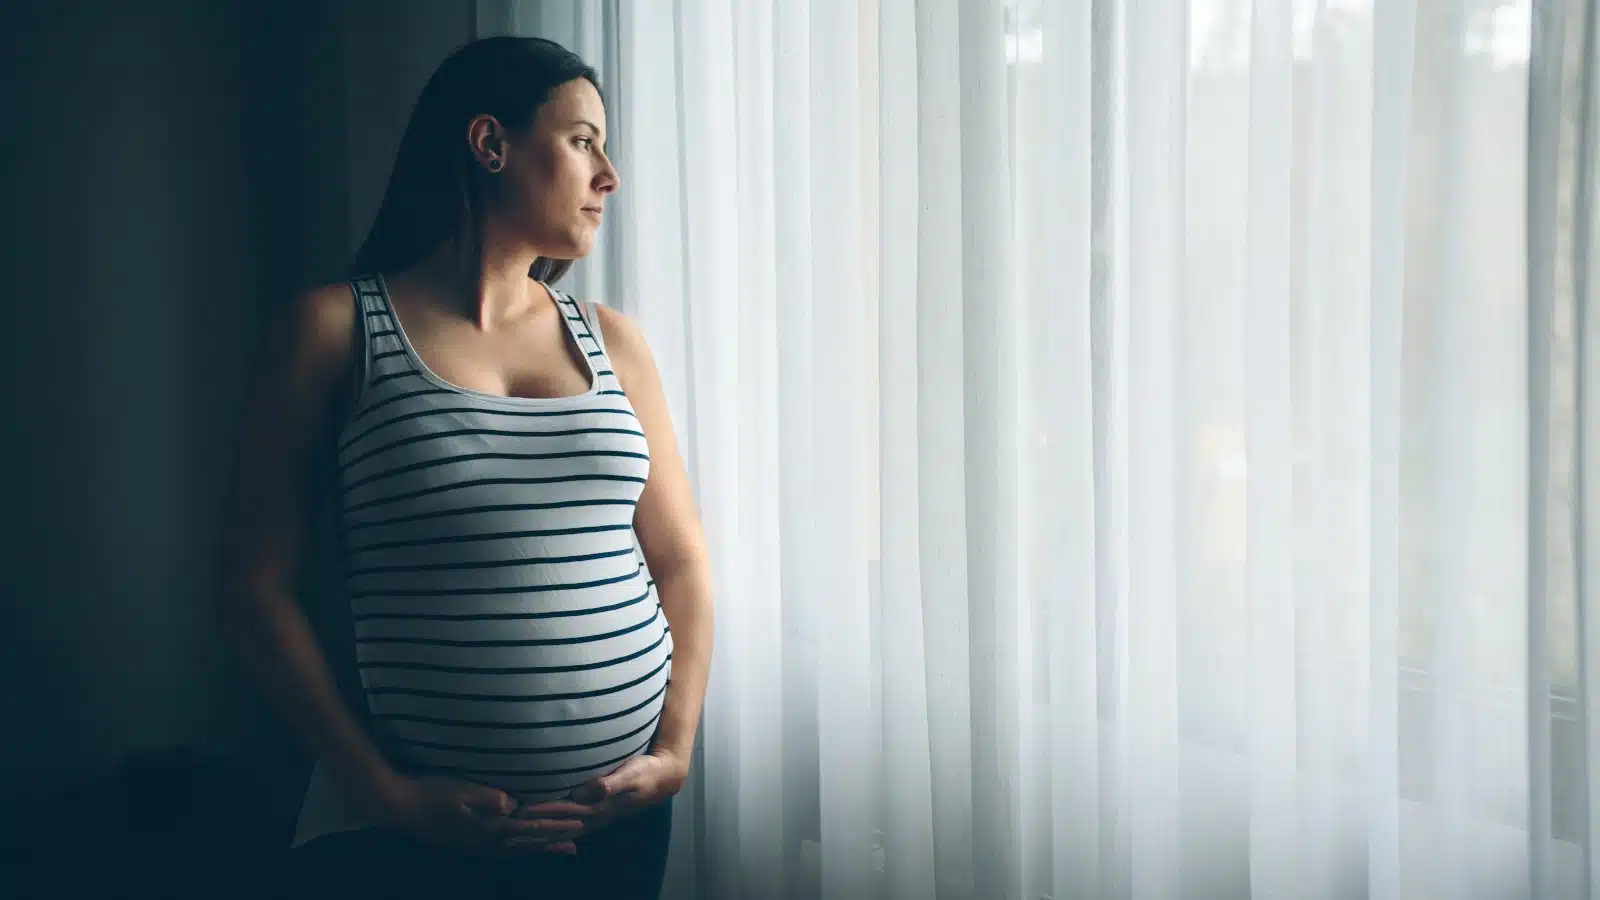 Maternità, tra miti e difficoltà: come intervenire sui pensieri disfunzionali